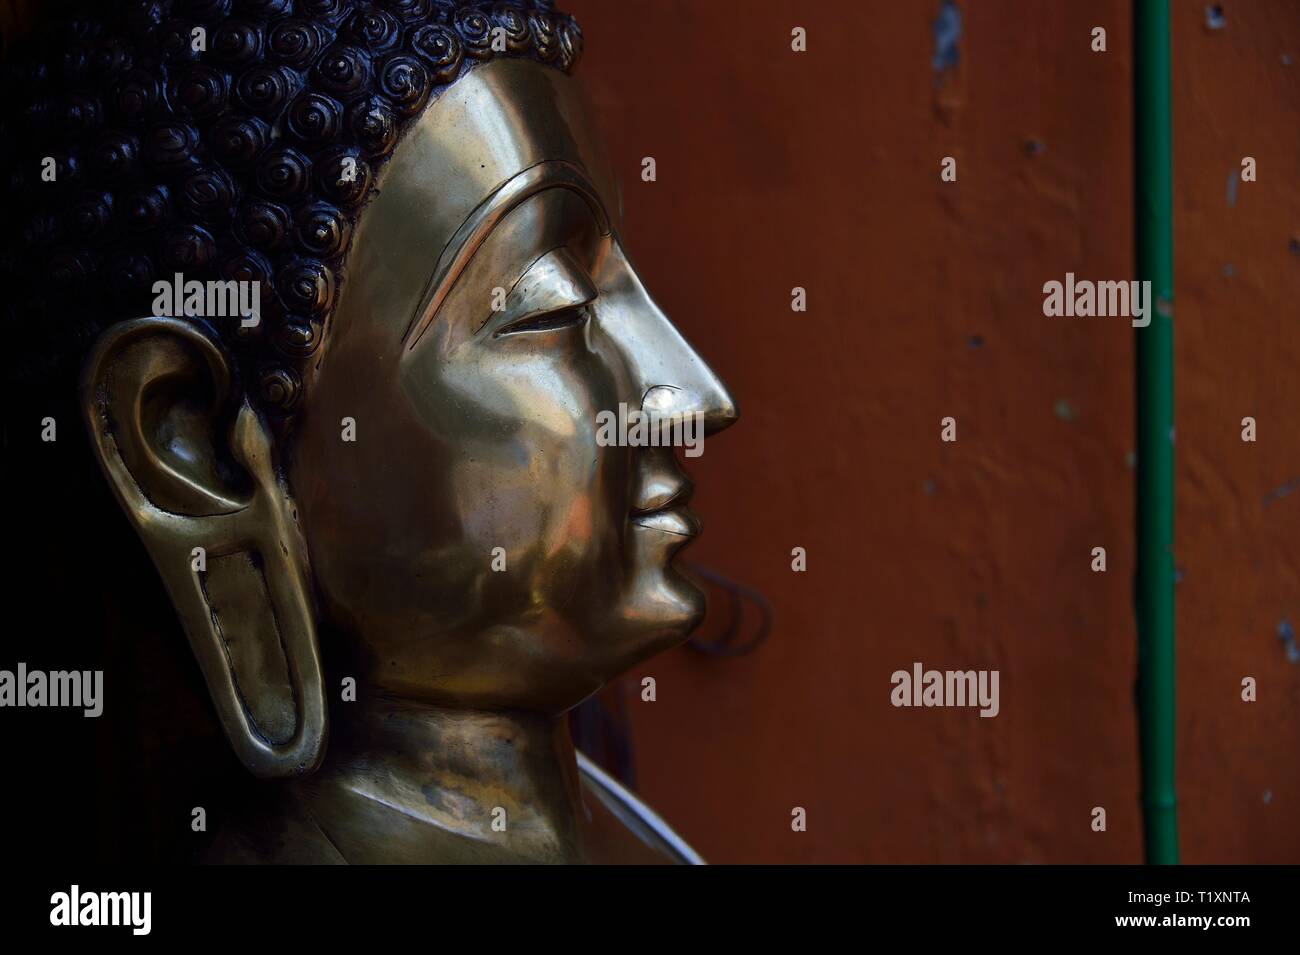 Nahaufnahme von Messing Statue von Buddha zeigt Gesicht im Profil mit ruhigem Ausdruck und Reiche metallische Farben und Texturen Stockfoto